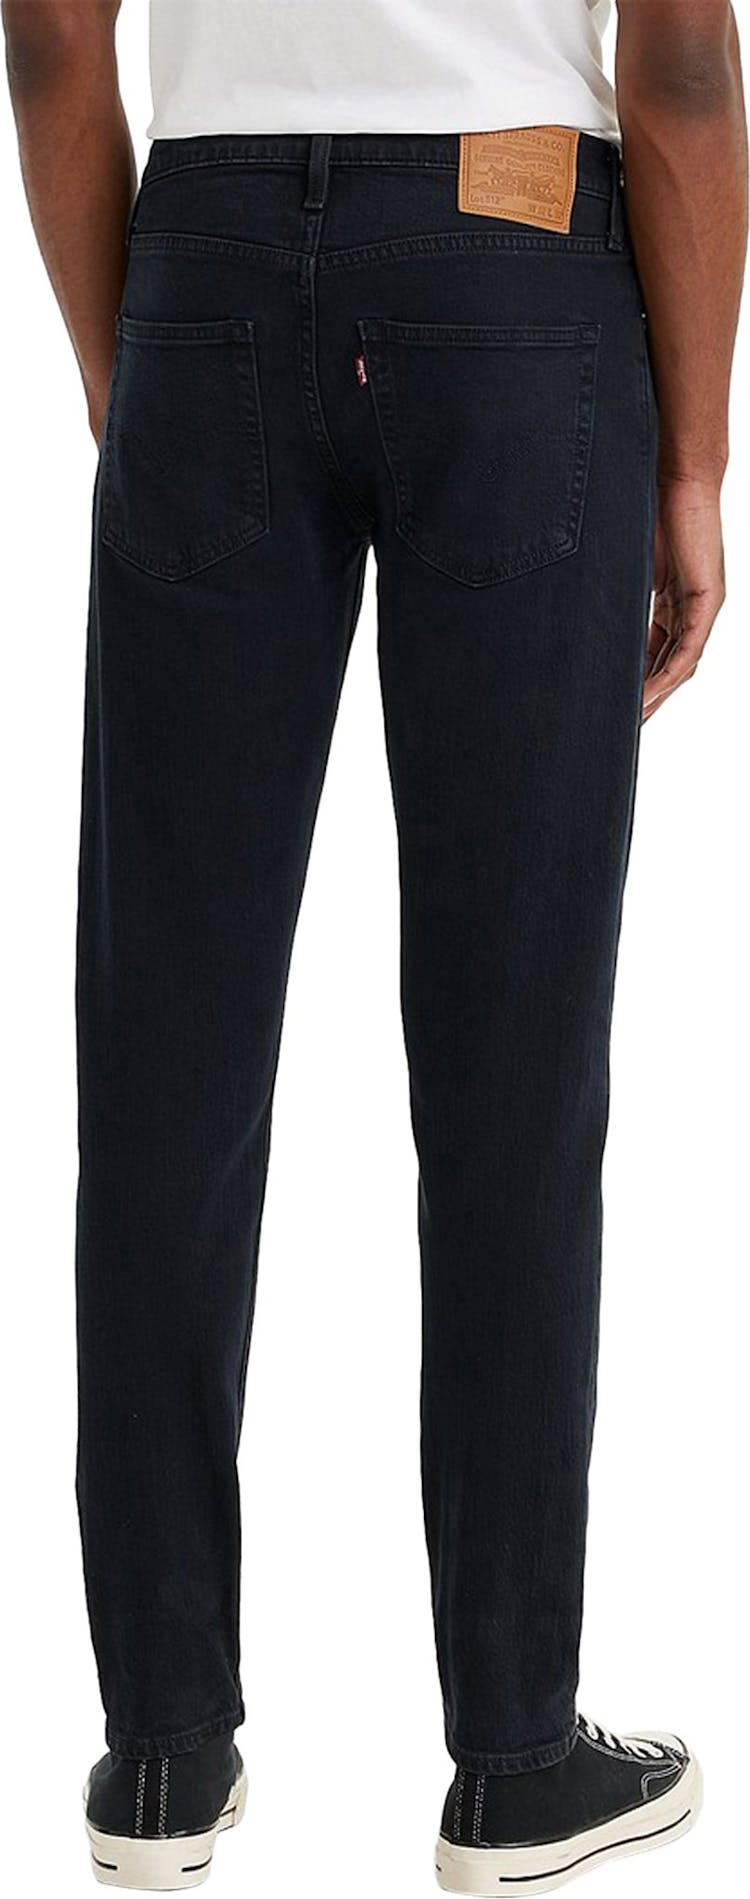 Numéro de l'image de la galerie de produits 2 pour le produit Jeans 512 Slim Taper Fit - Homme